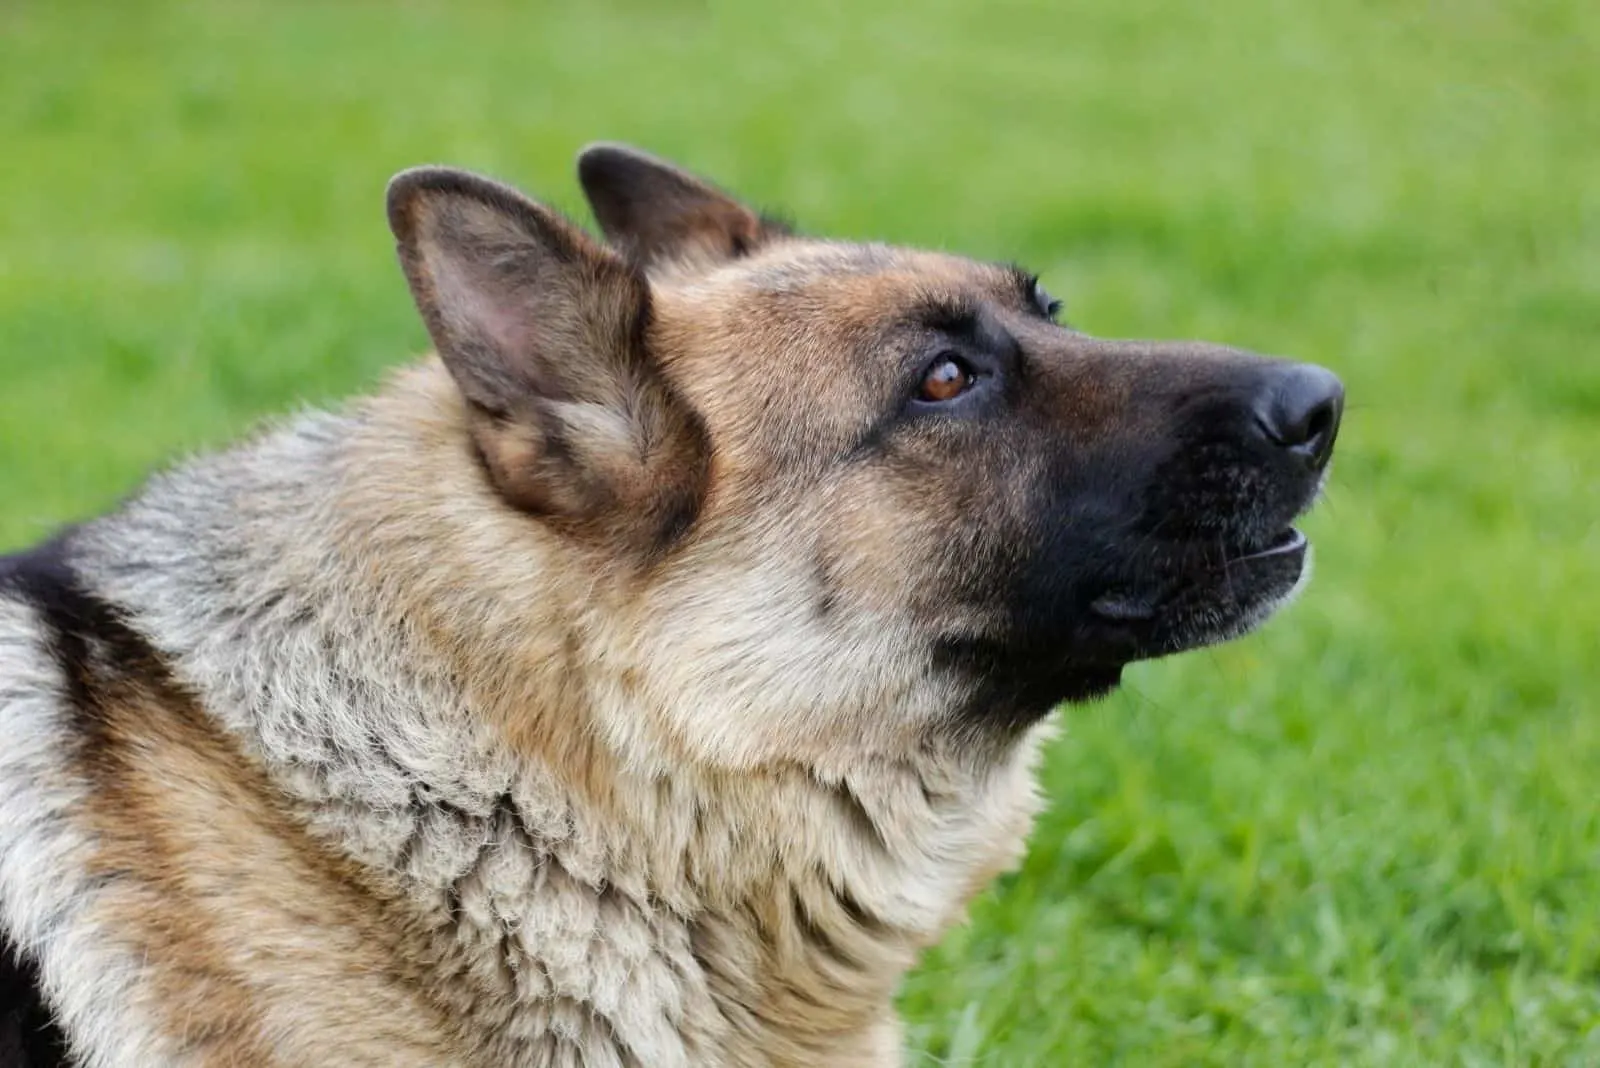 german shepherd howls in focus photography outdoors